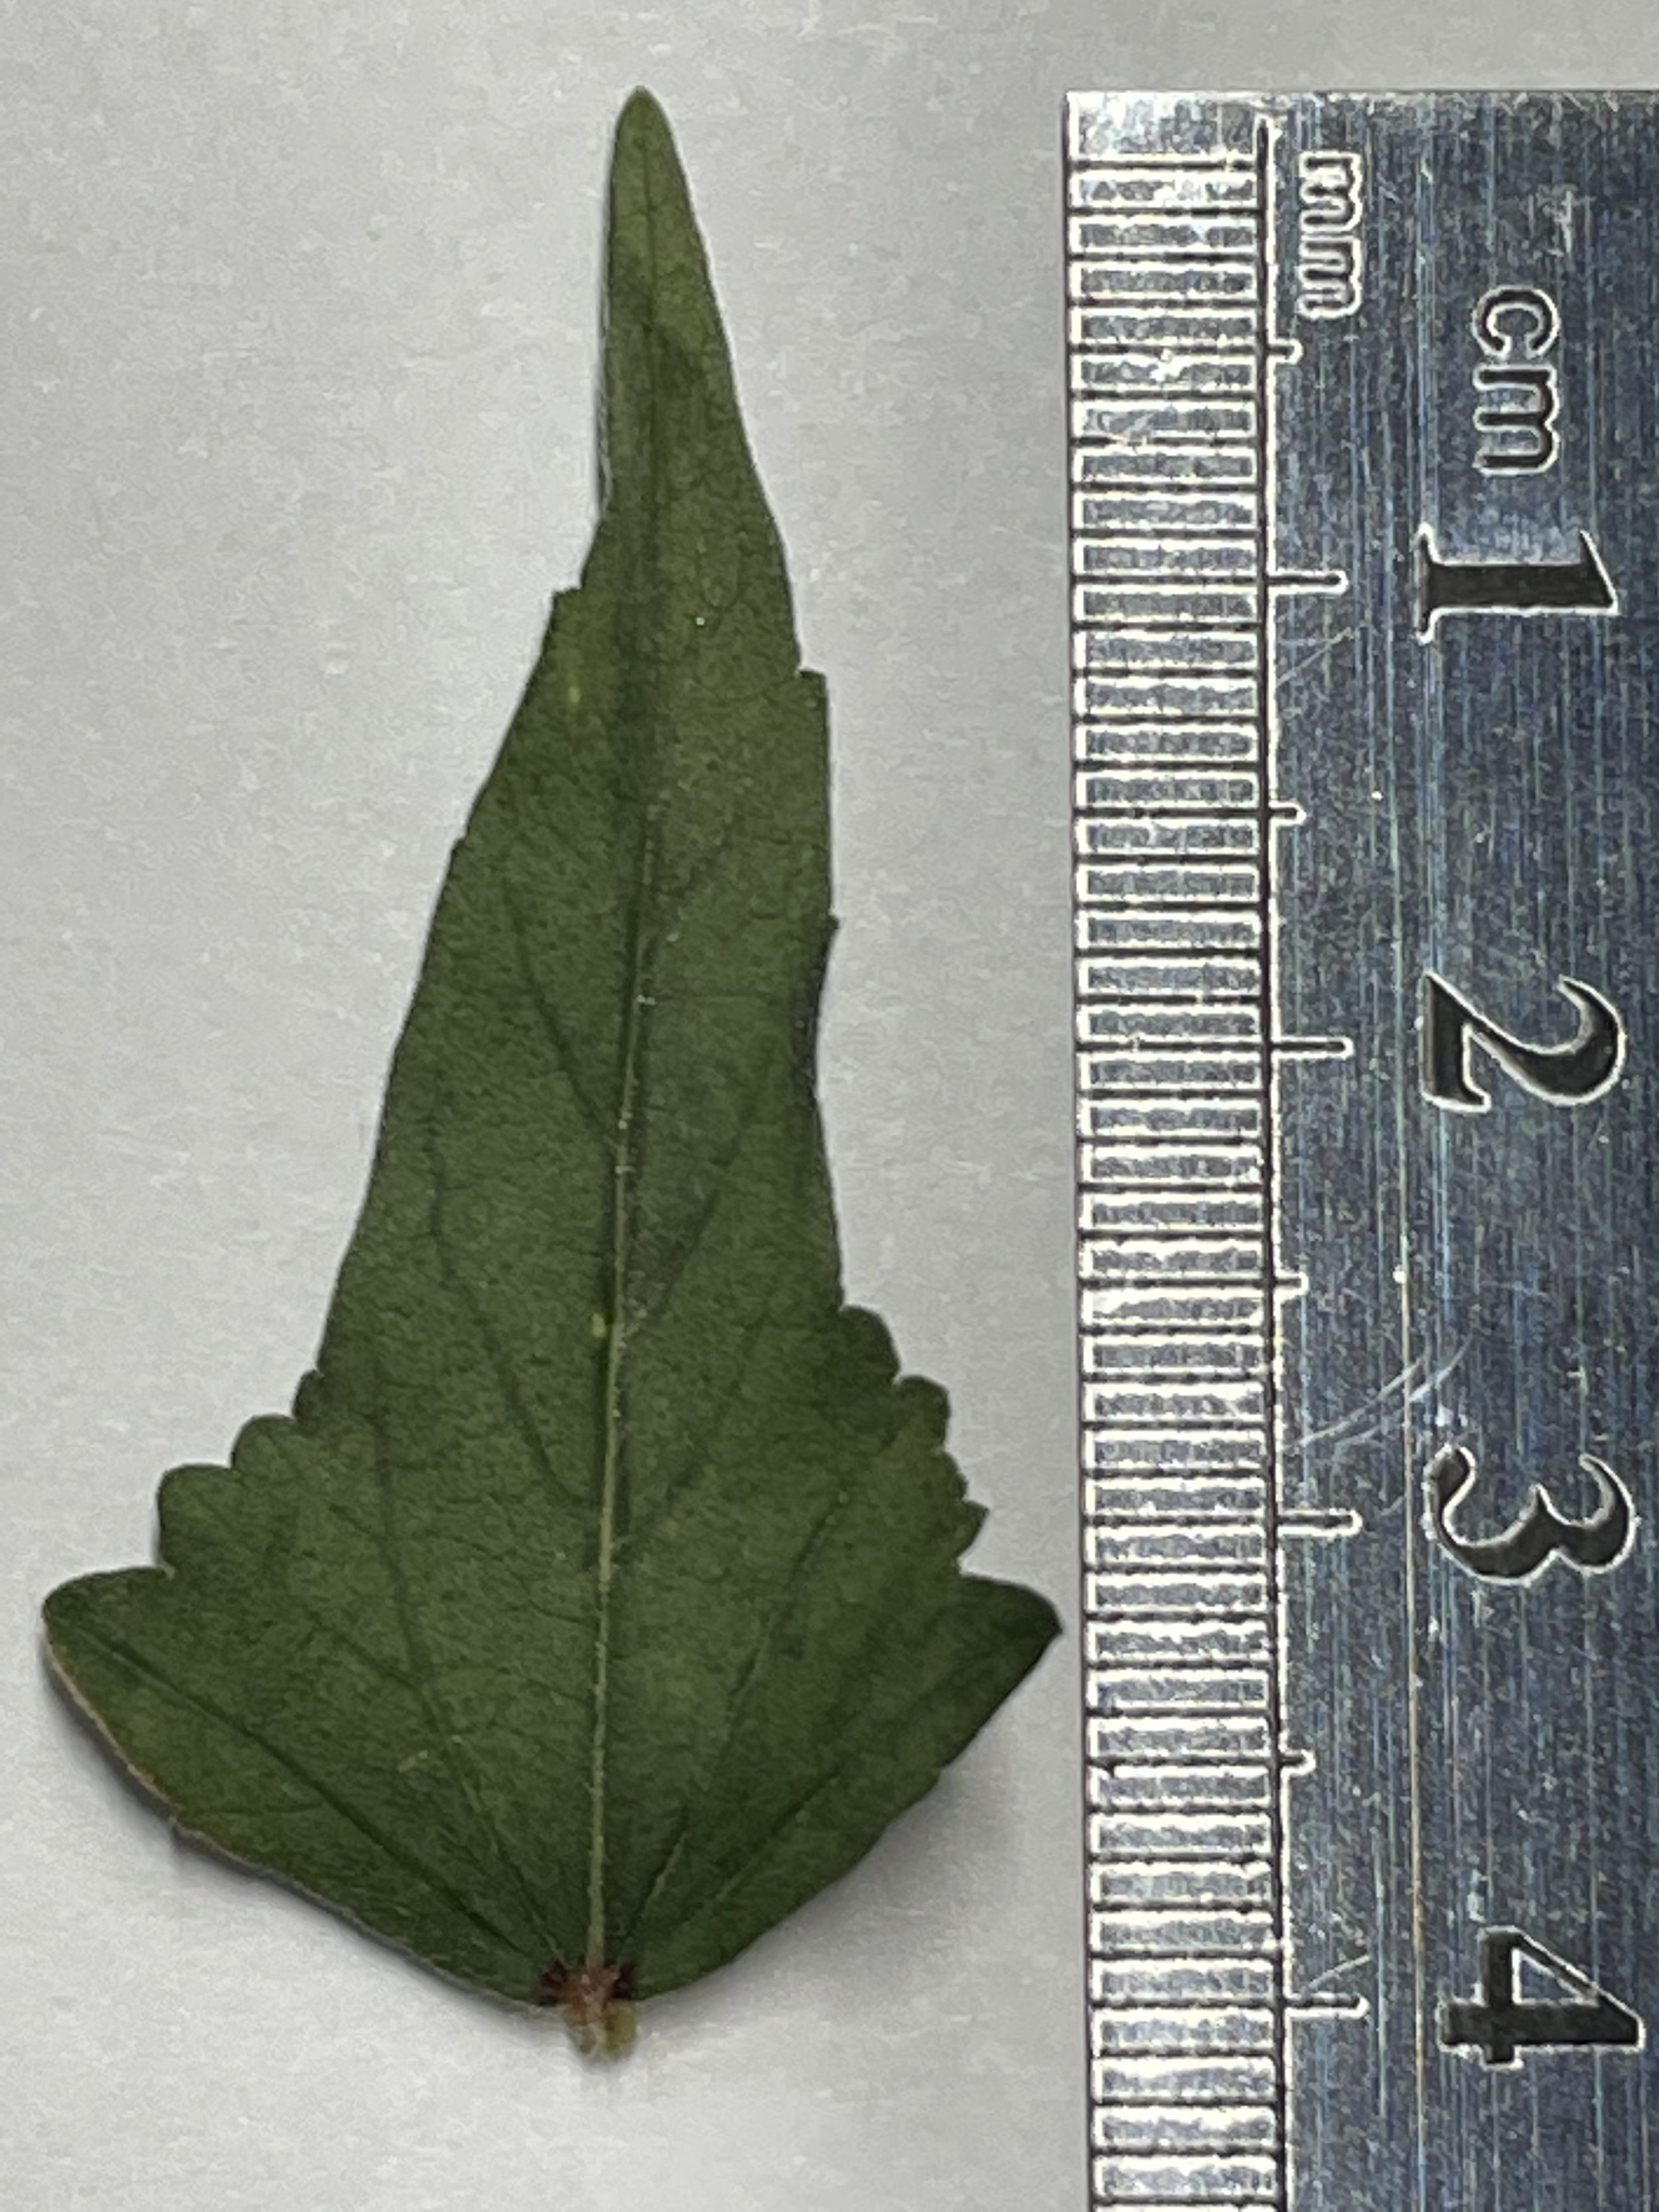 Leaf shape